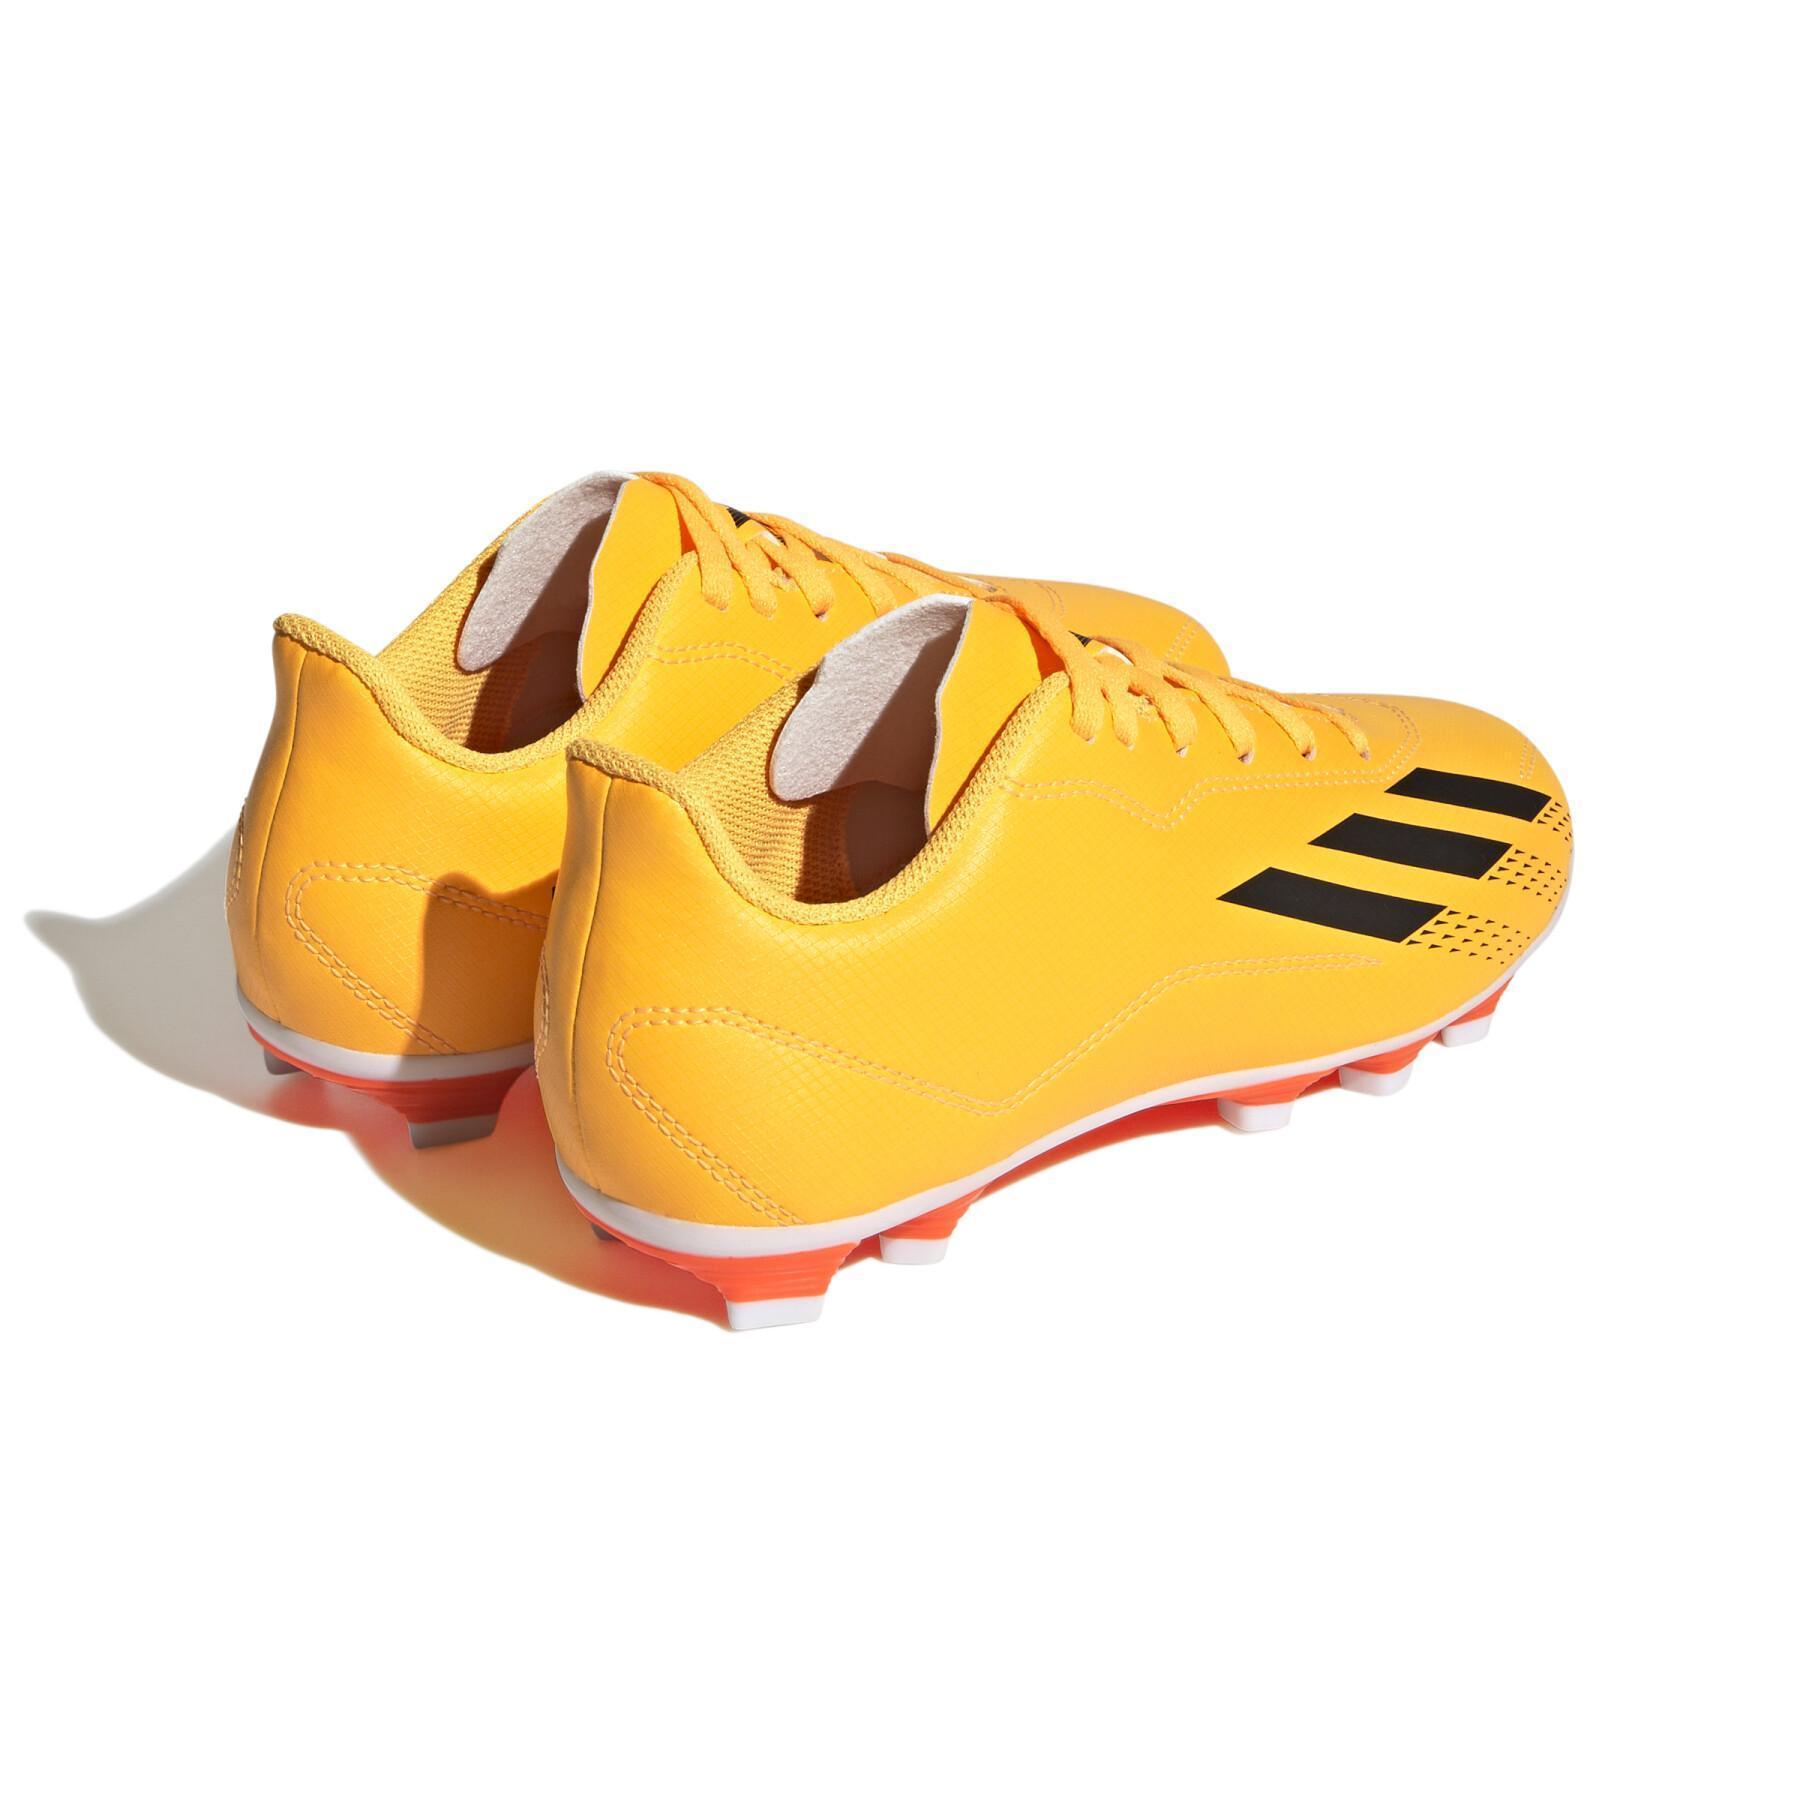 Kinder-Fußballschuhe adidas X Speedportal.4 Fxg Heatspawn Pack